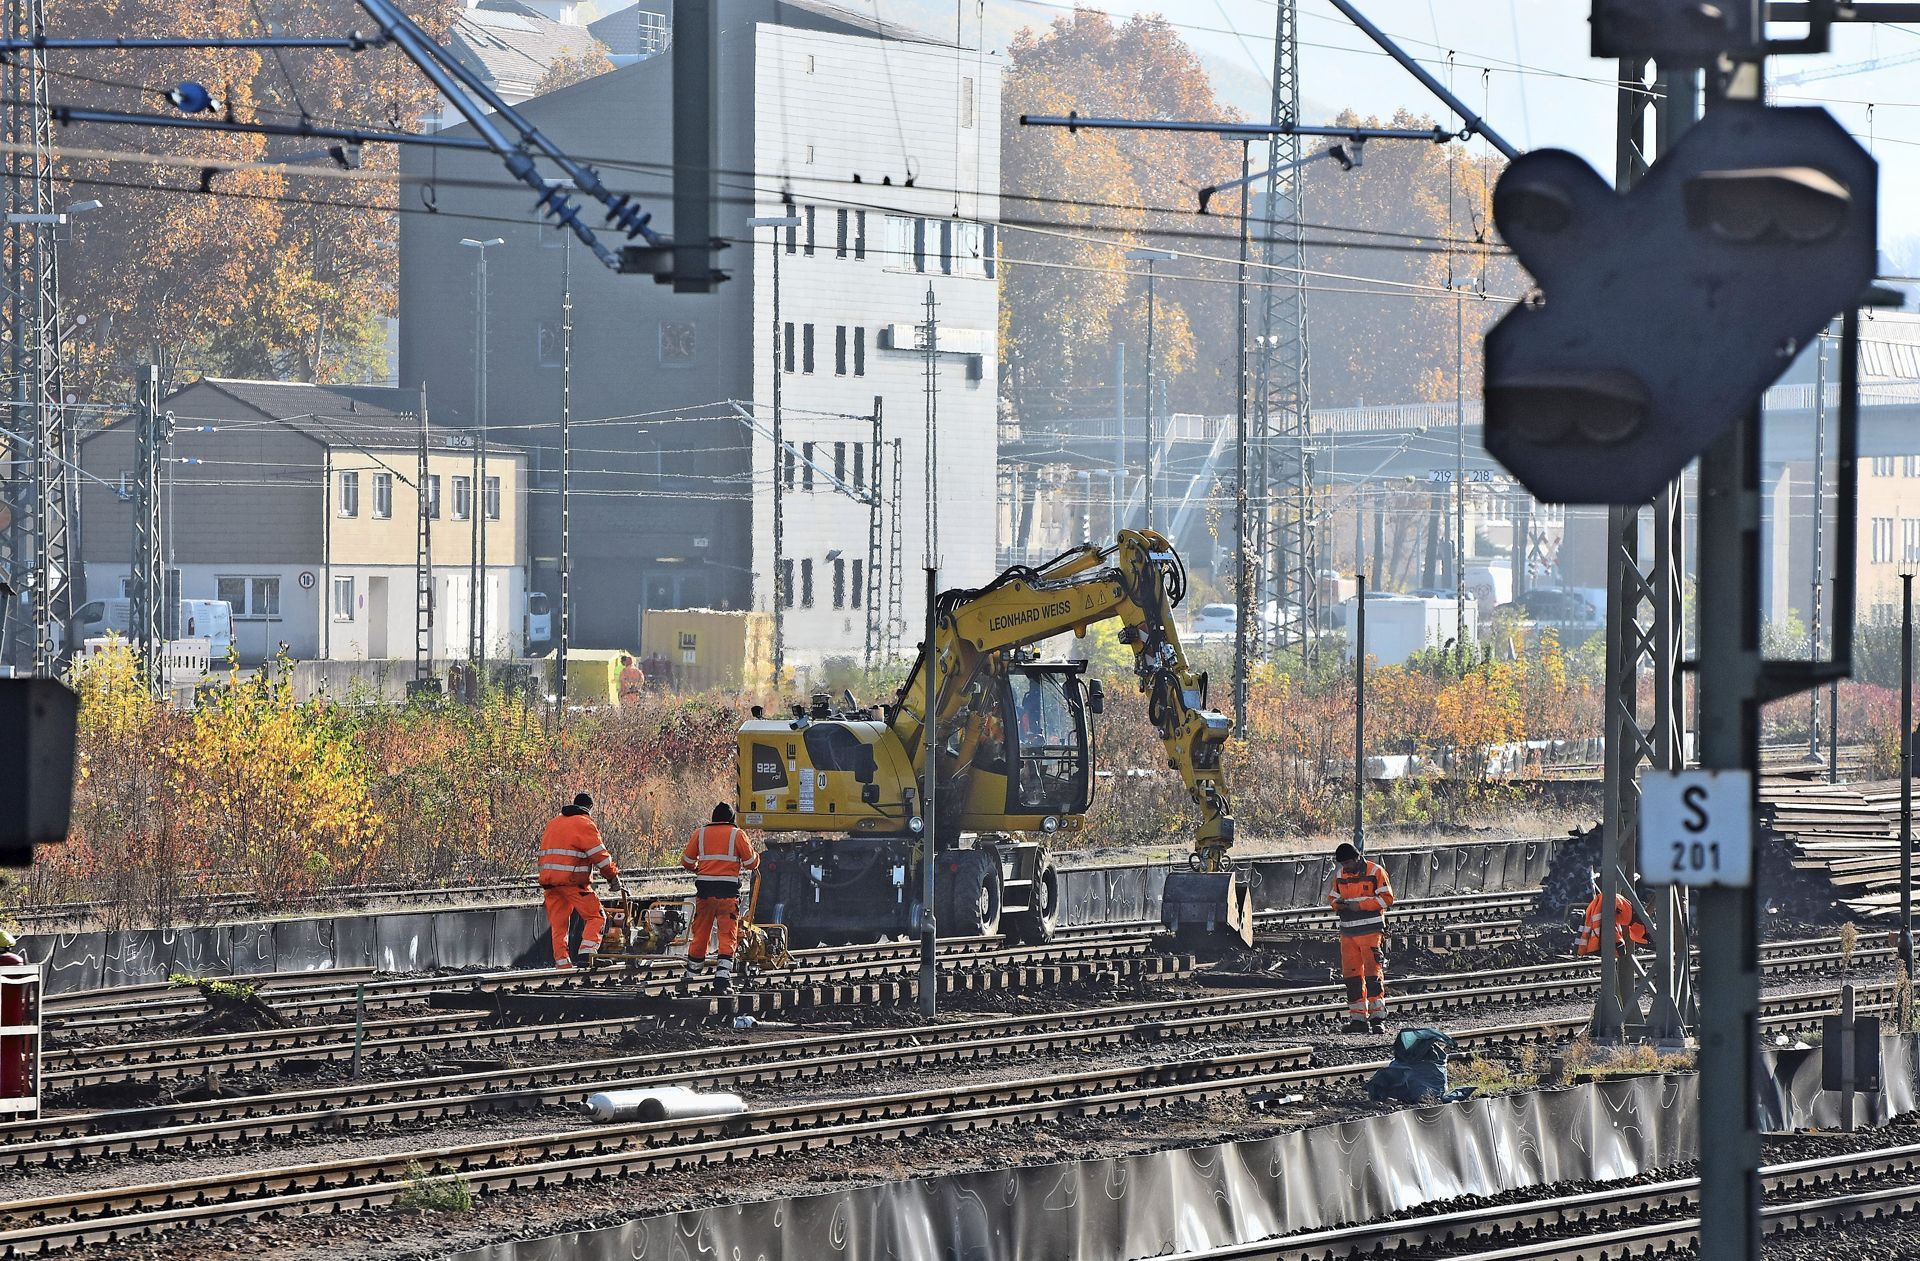 S21Bauarbeiten in StuttgartUntertürkheim Baubeginn für